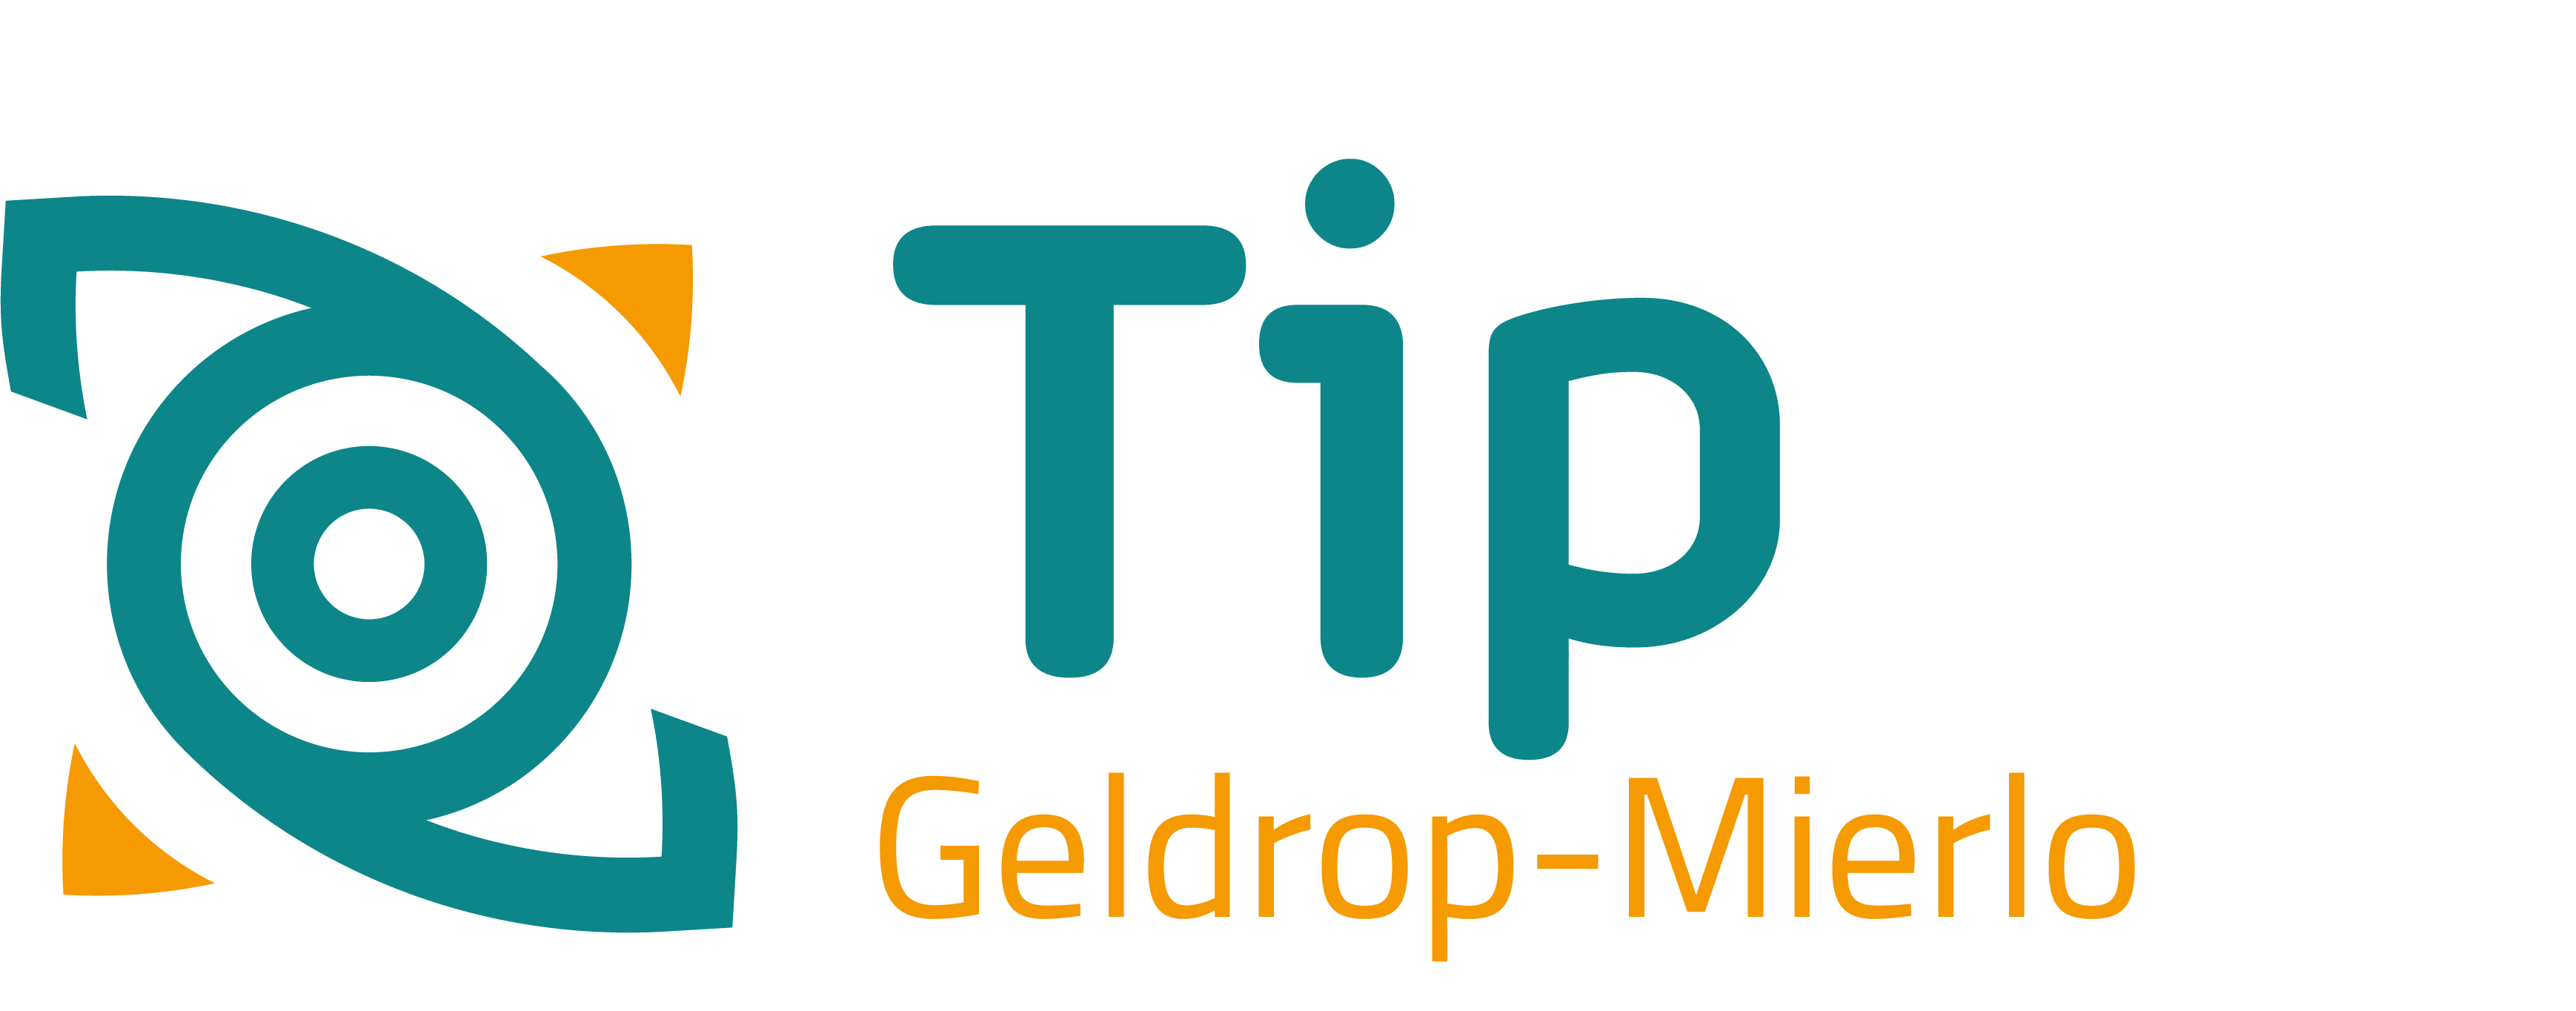 TipGeldrop-Mierlo